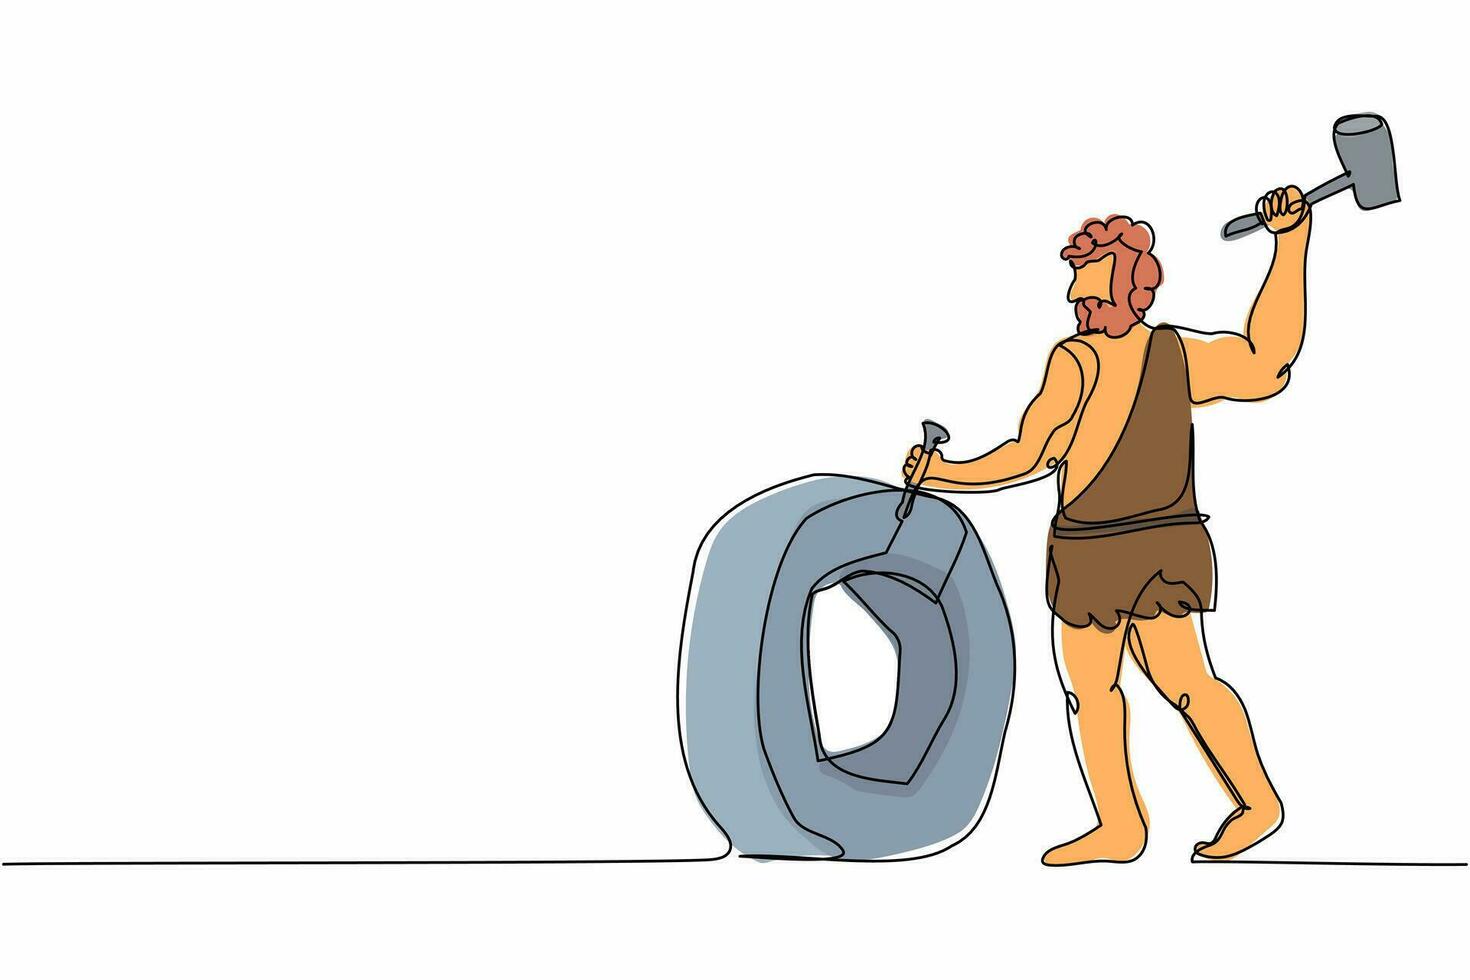 hombre de las cavernas de un solo dibujo de línea inventando la rueda. composición de personas primitivas prehistóricas con una antigua rueda humana hecha de piedra. ilustración de vector gráfico de diseño de dibujo de línea continua